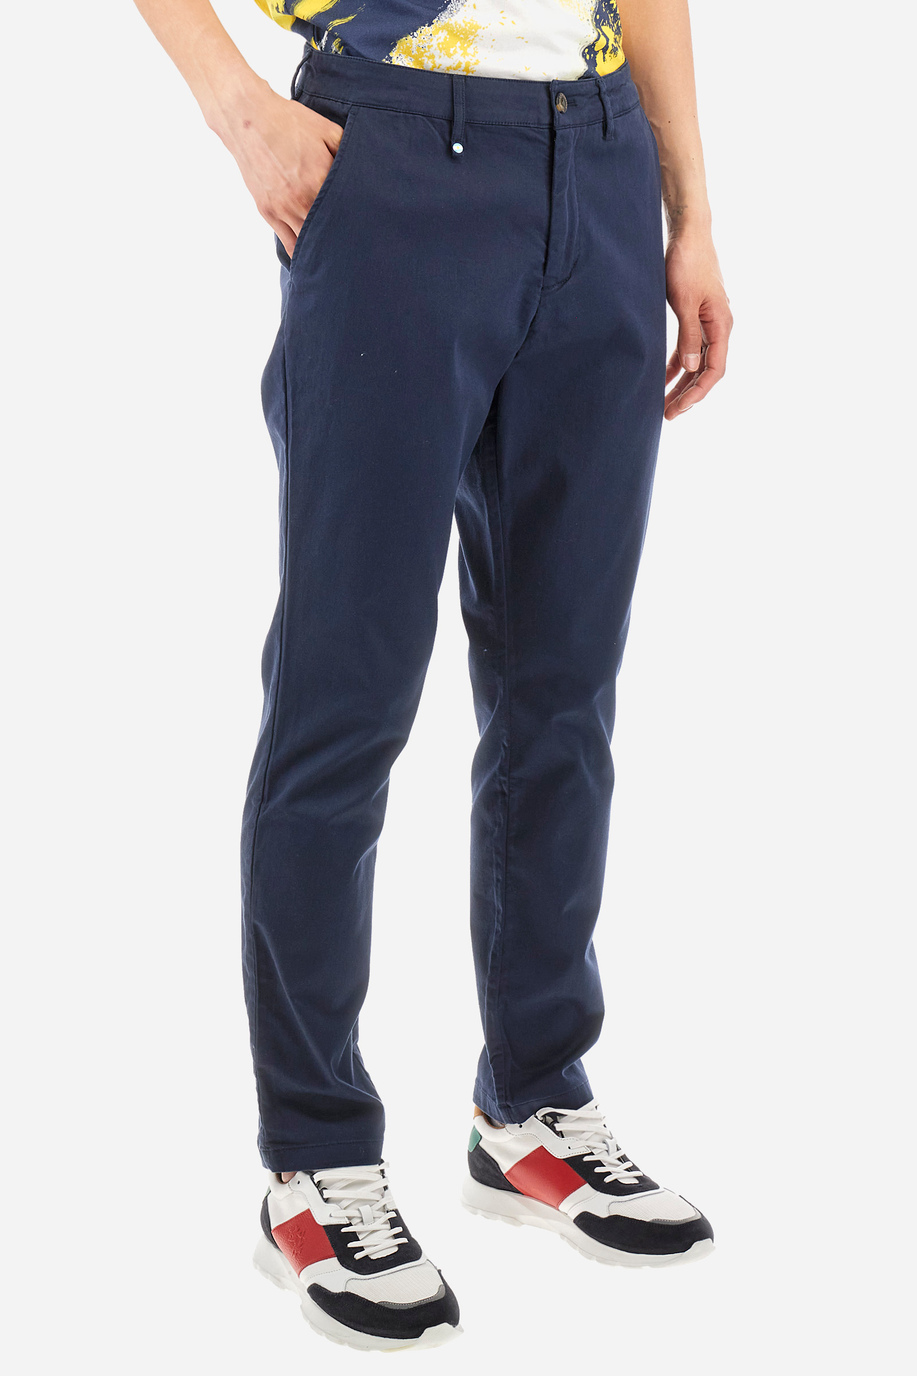 Pantalone chino regular fit in cotone elasticizzato - Siard - Pantaloni | La Martina - Official Online Shop